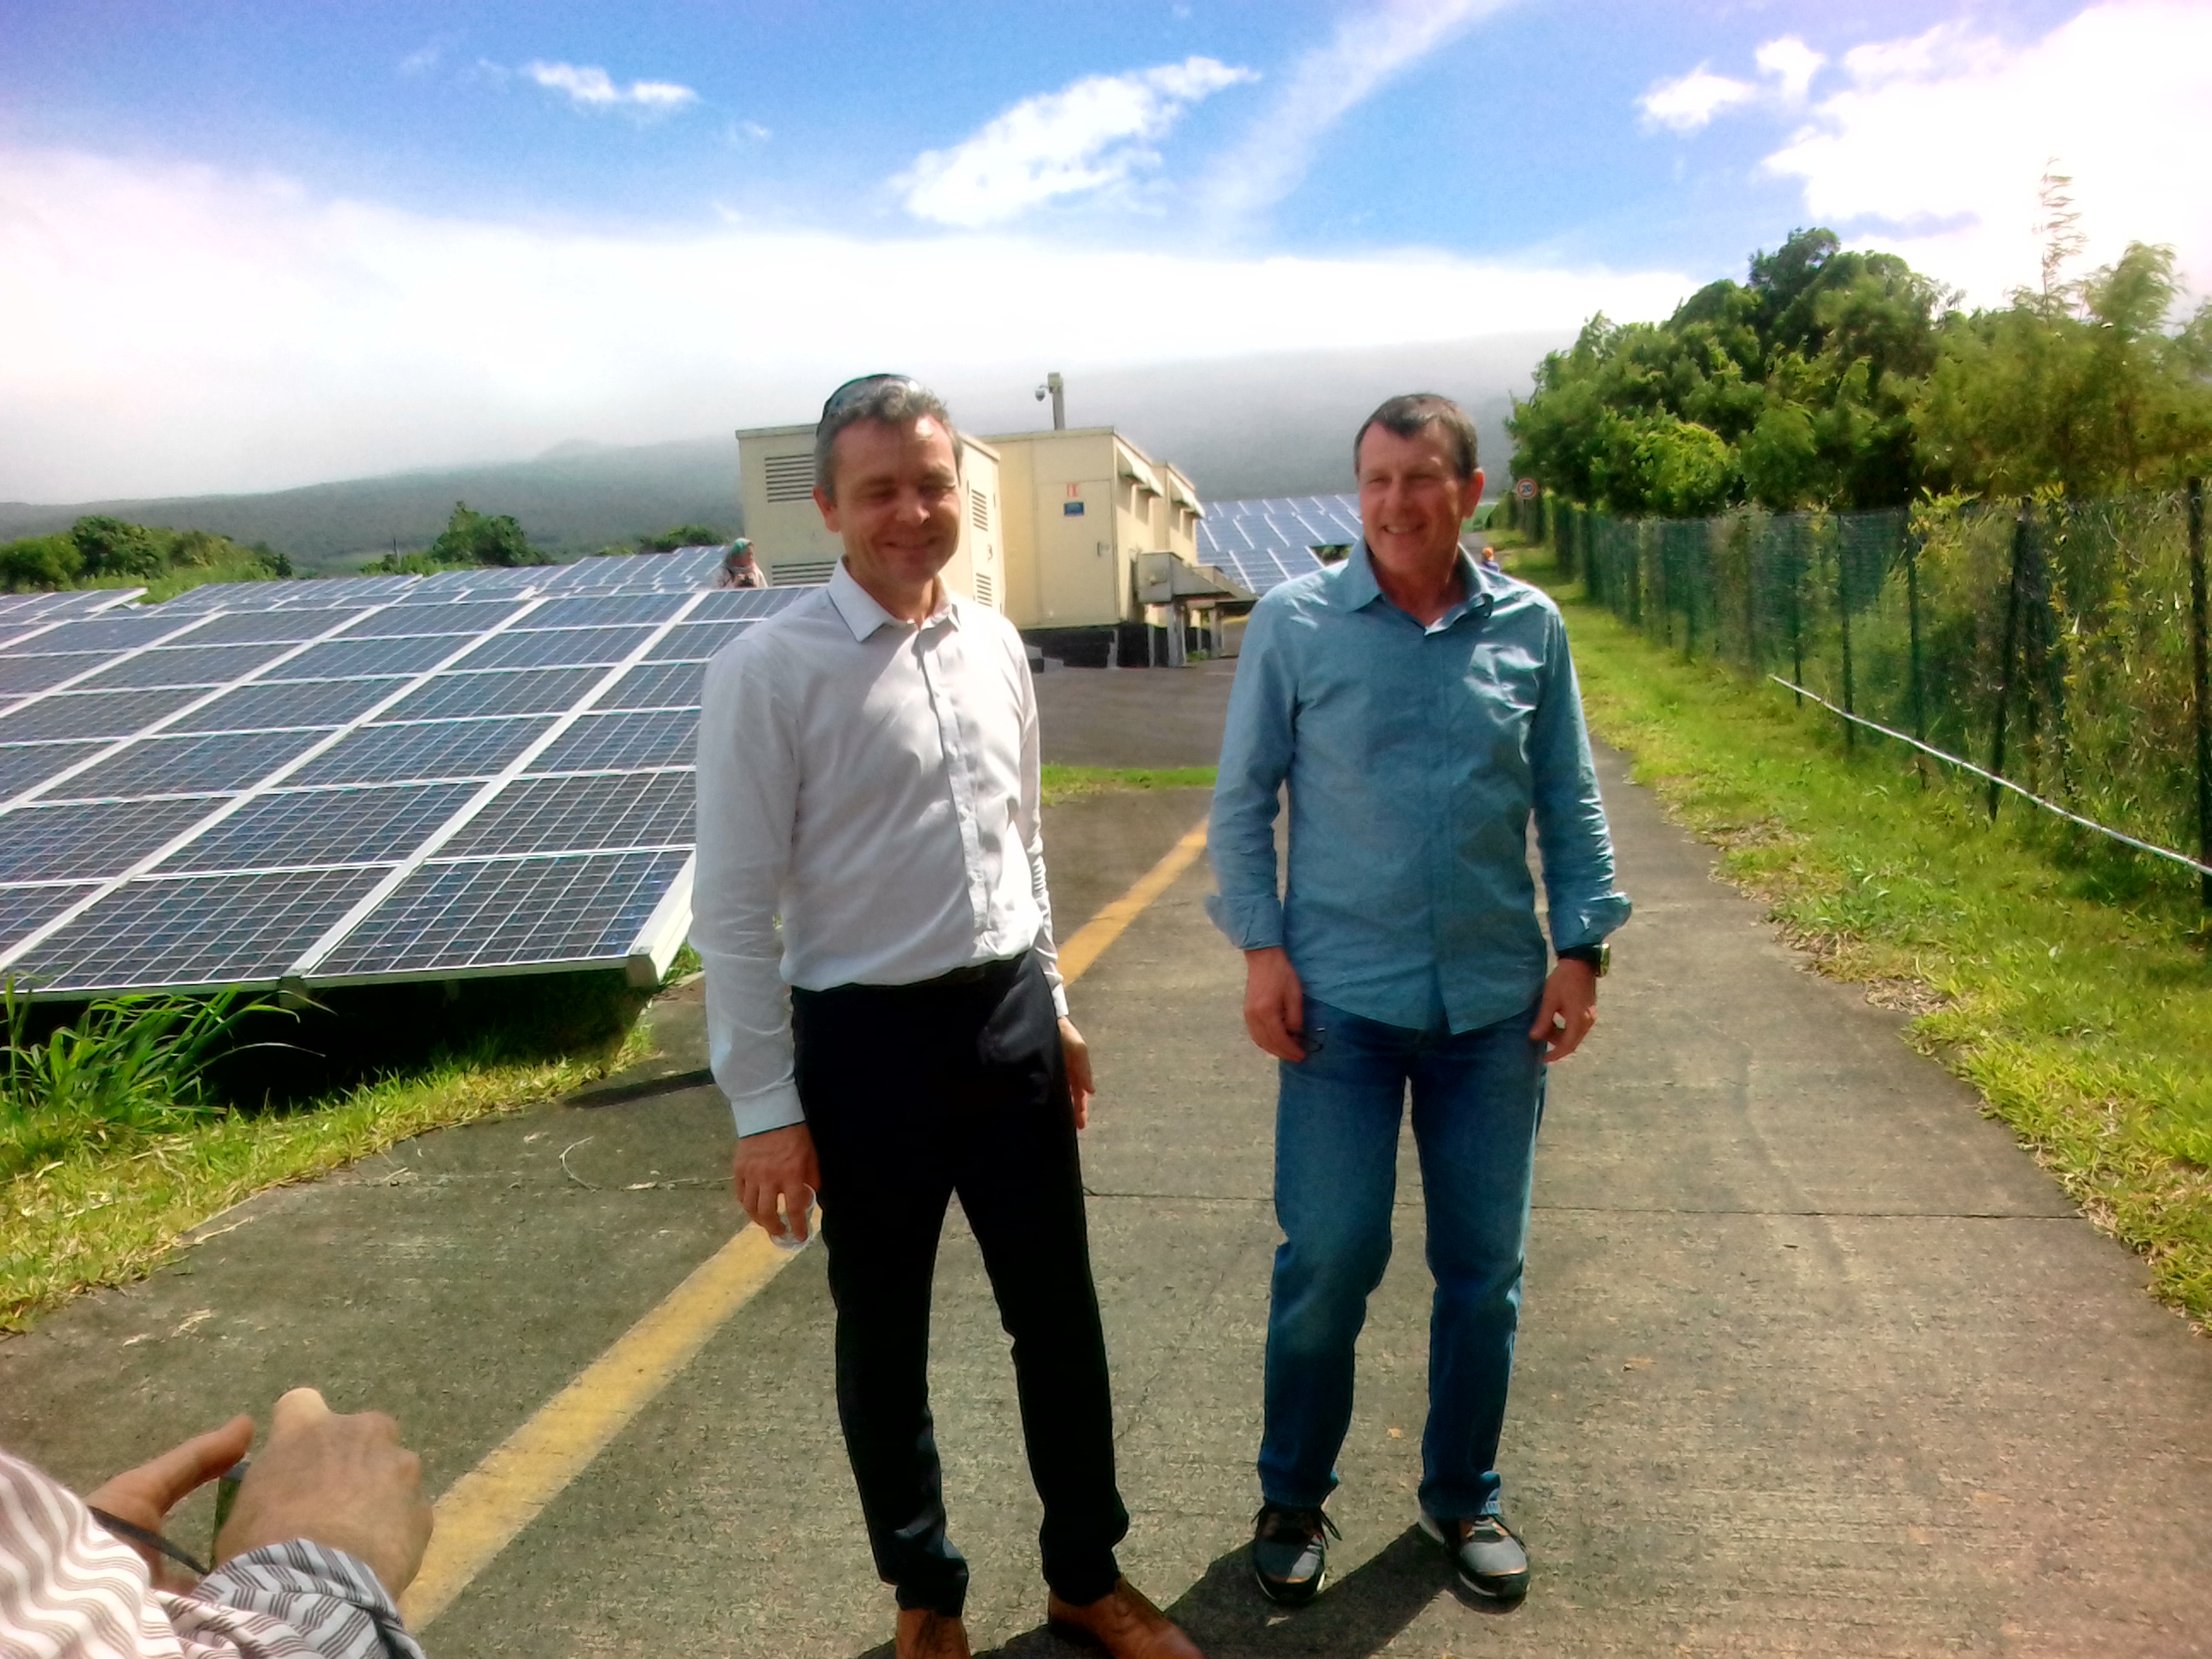 David Augeix (le Directeur Régional Sud et Outremer de RDF Renouvelable) et Jerôme Billerey, responsable DOM SER (syndicat des énergie renouvelables) sur la centrale de Saint-Rose ©EDF Renouvelables